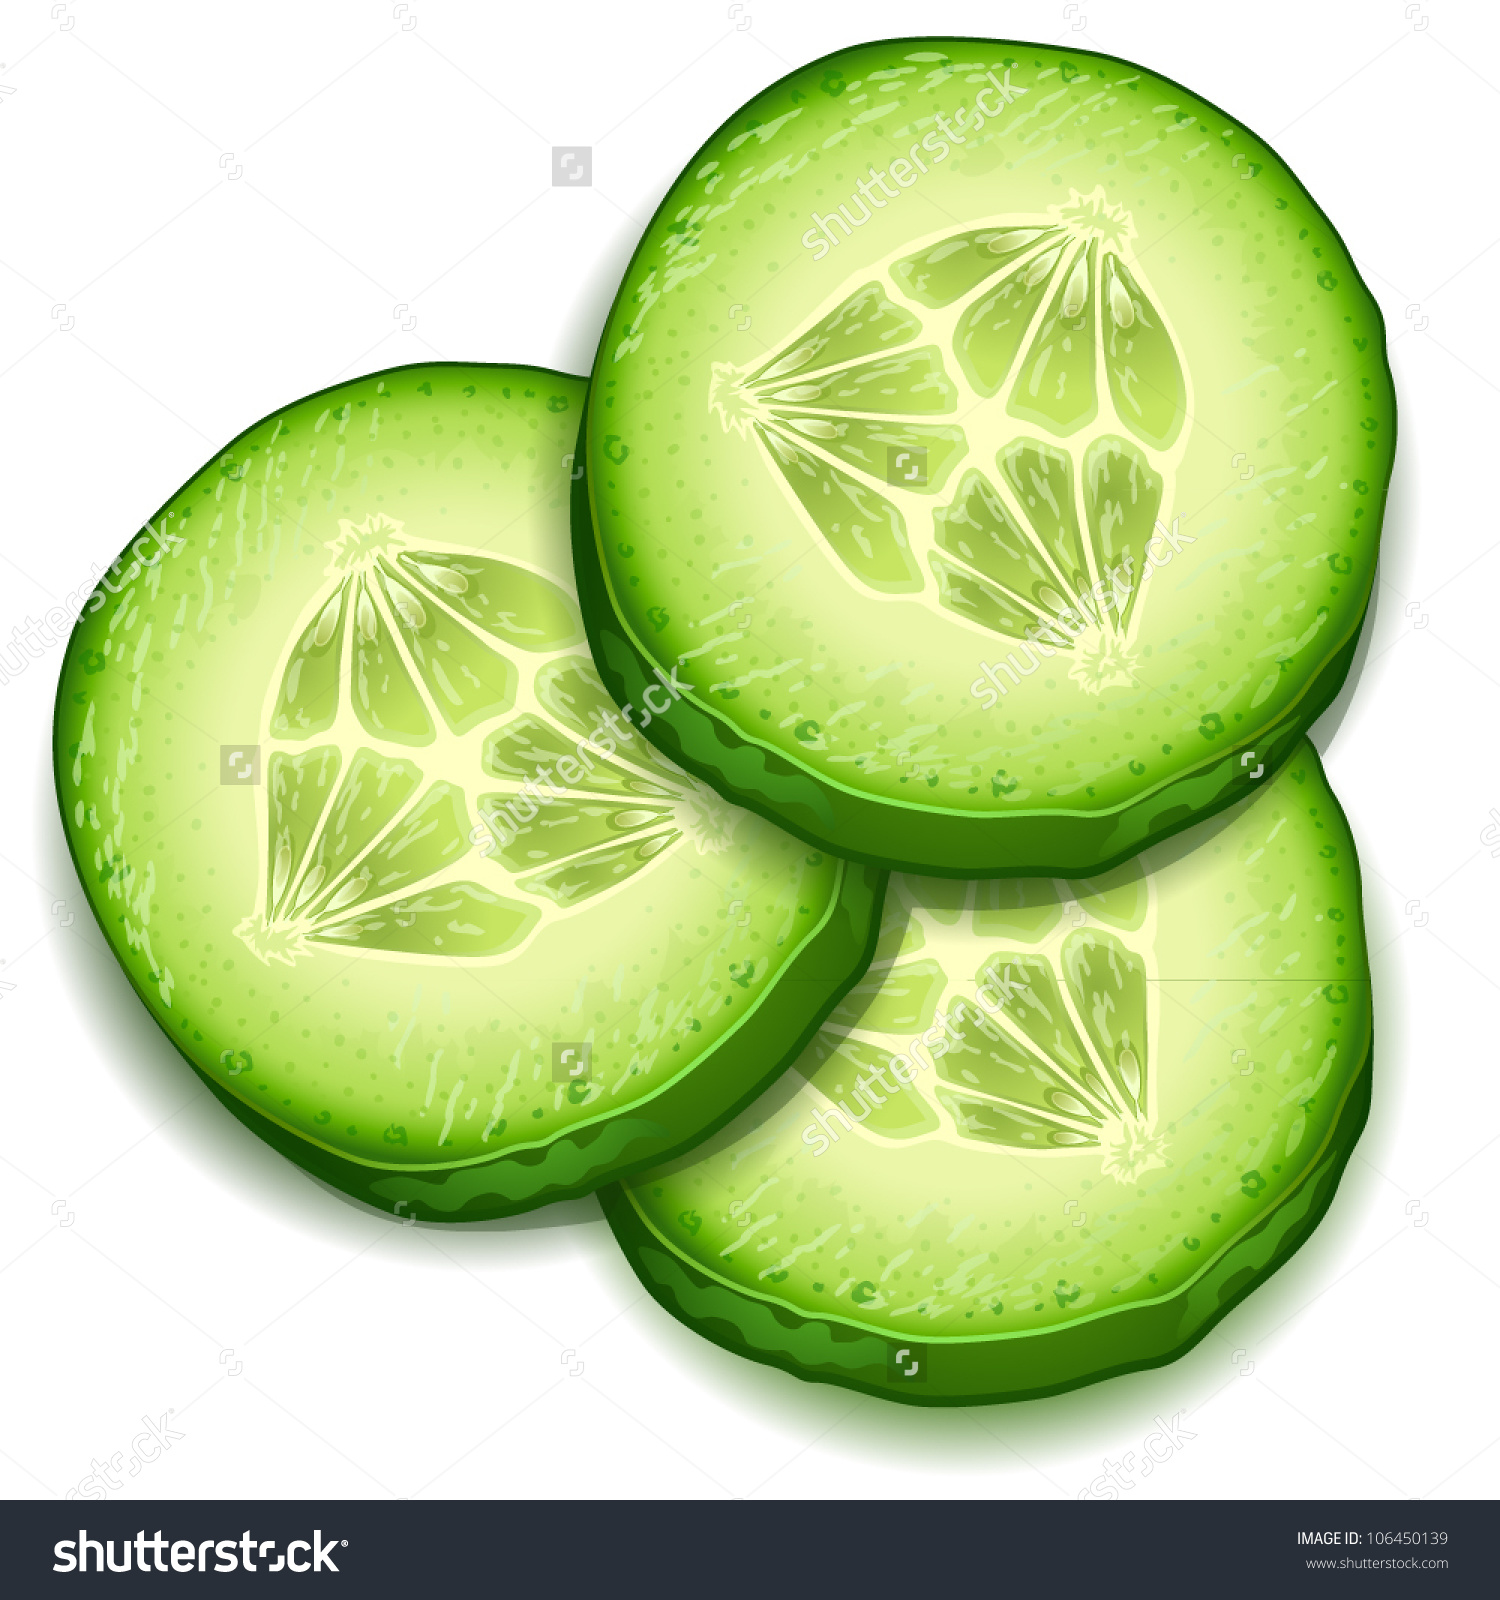 cucumber - illustration of cu